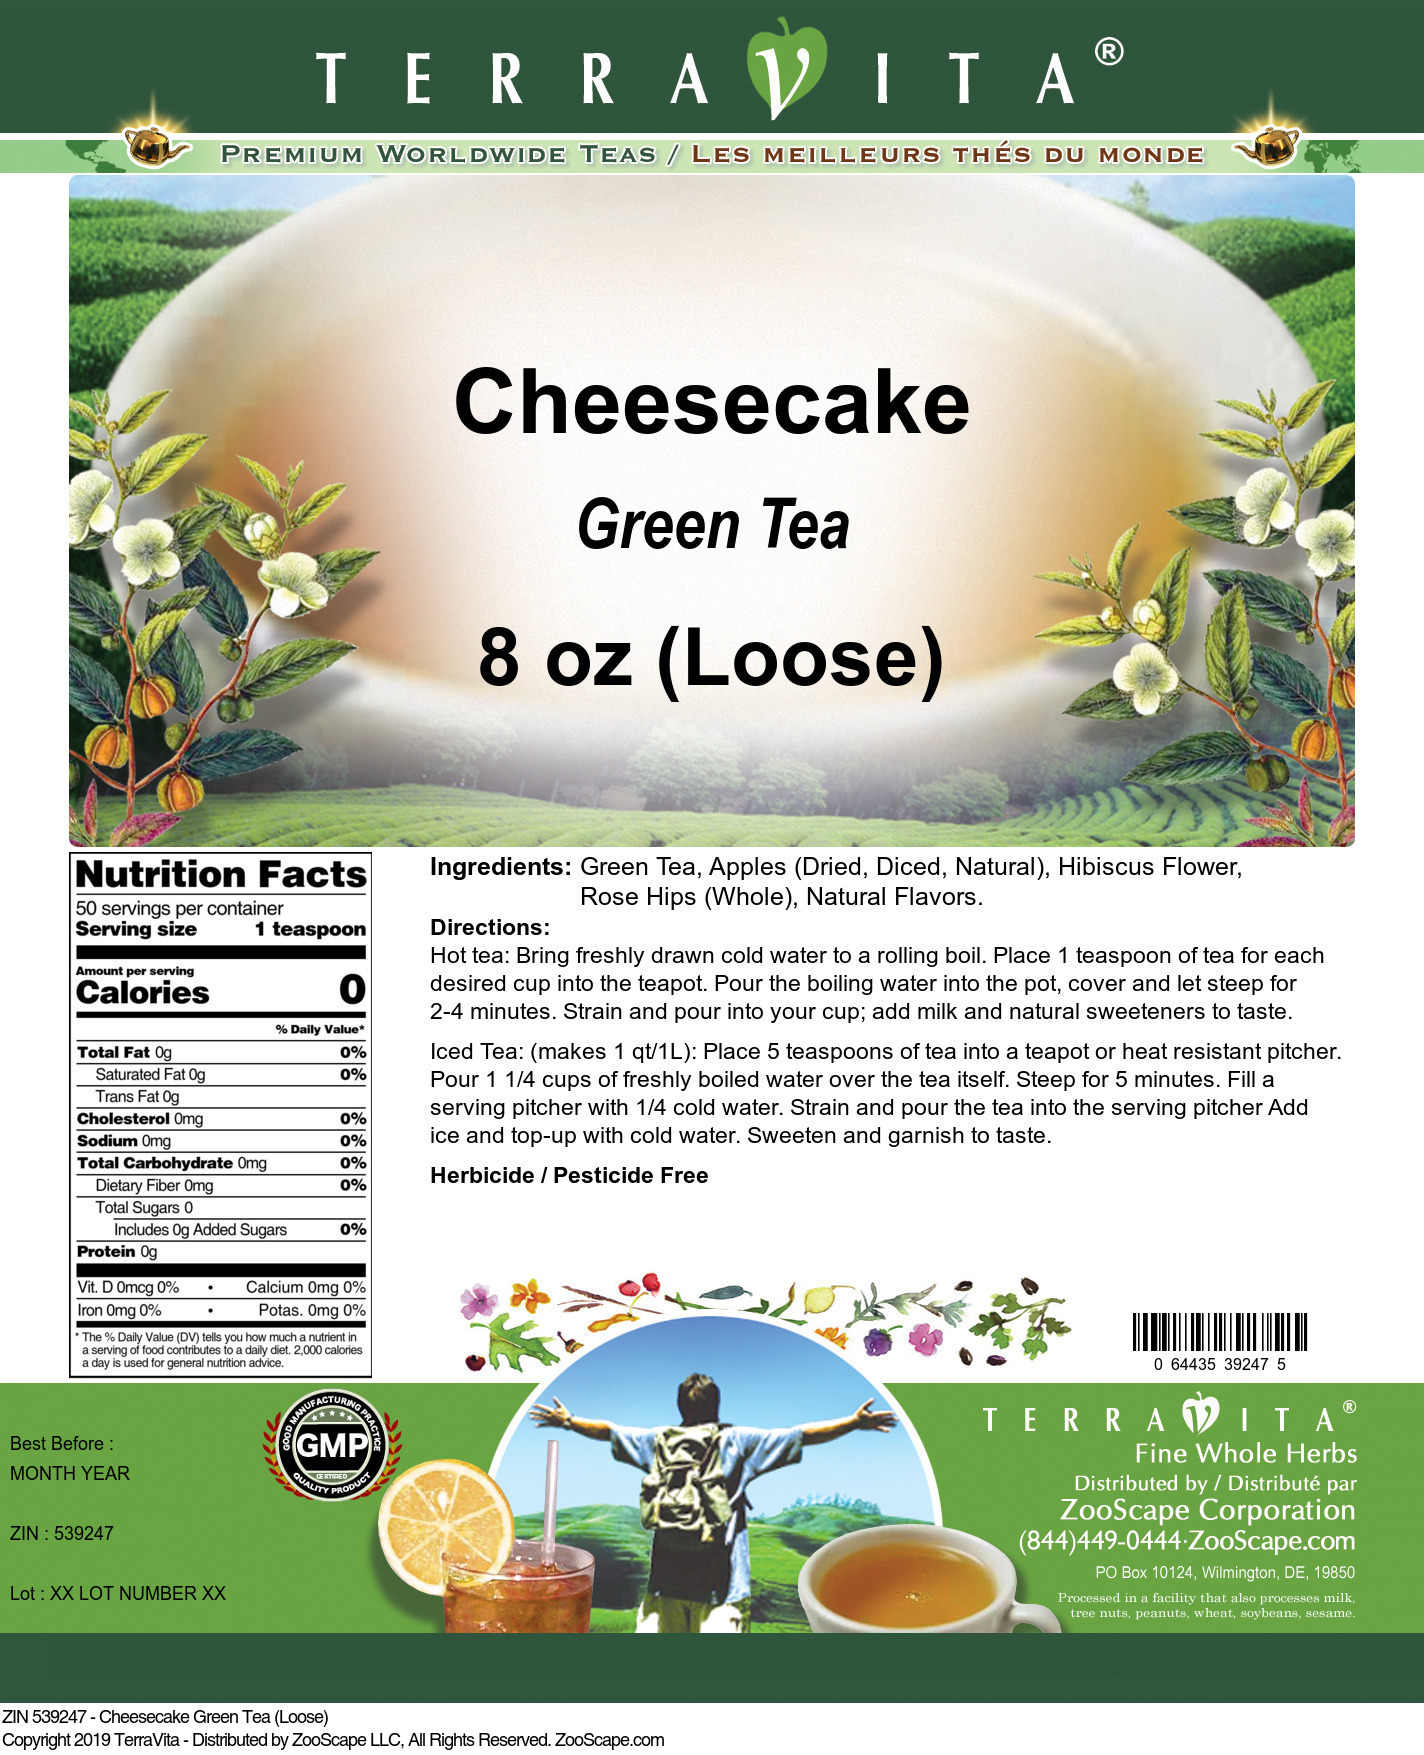 Cheesecake Green Tea (Loose) - Label